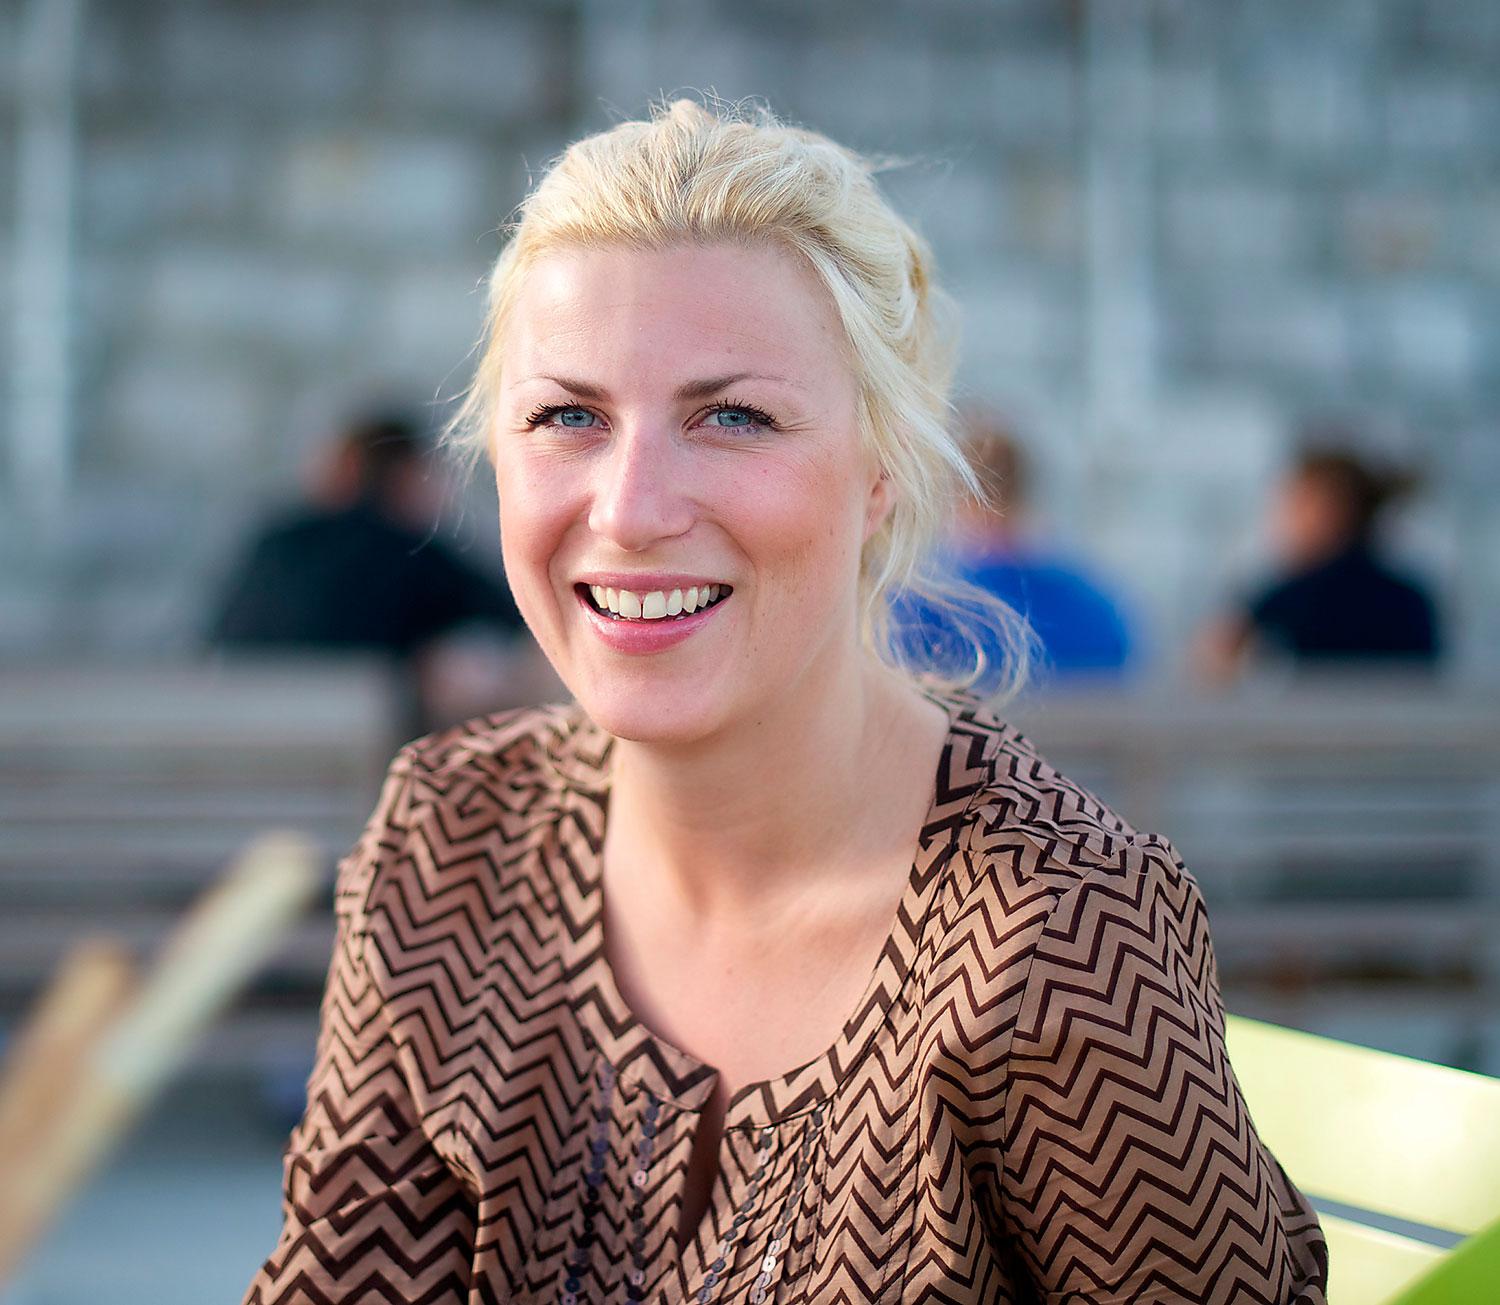 Aftonbladets nya resebloggare Anna Norström ser fram emot kulinariska upplevelser.